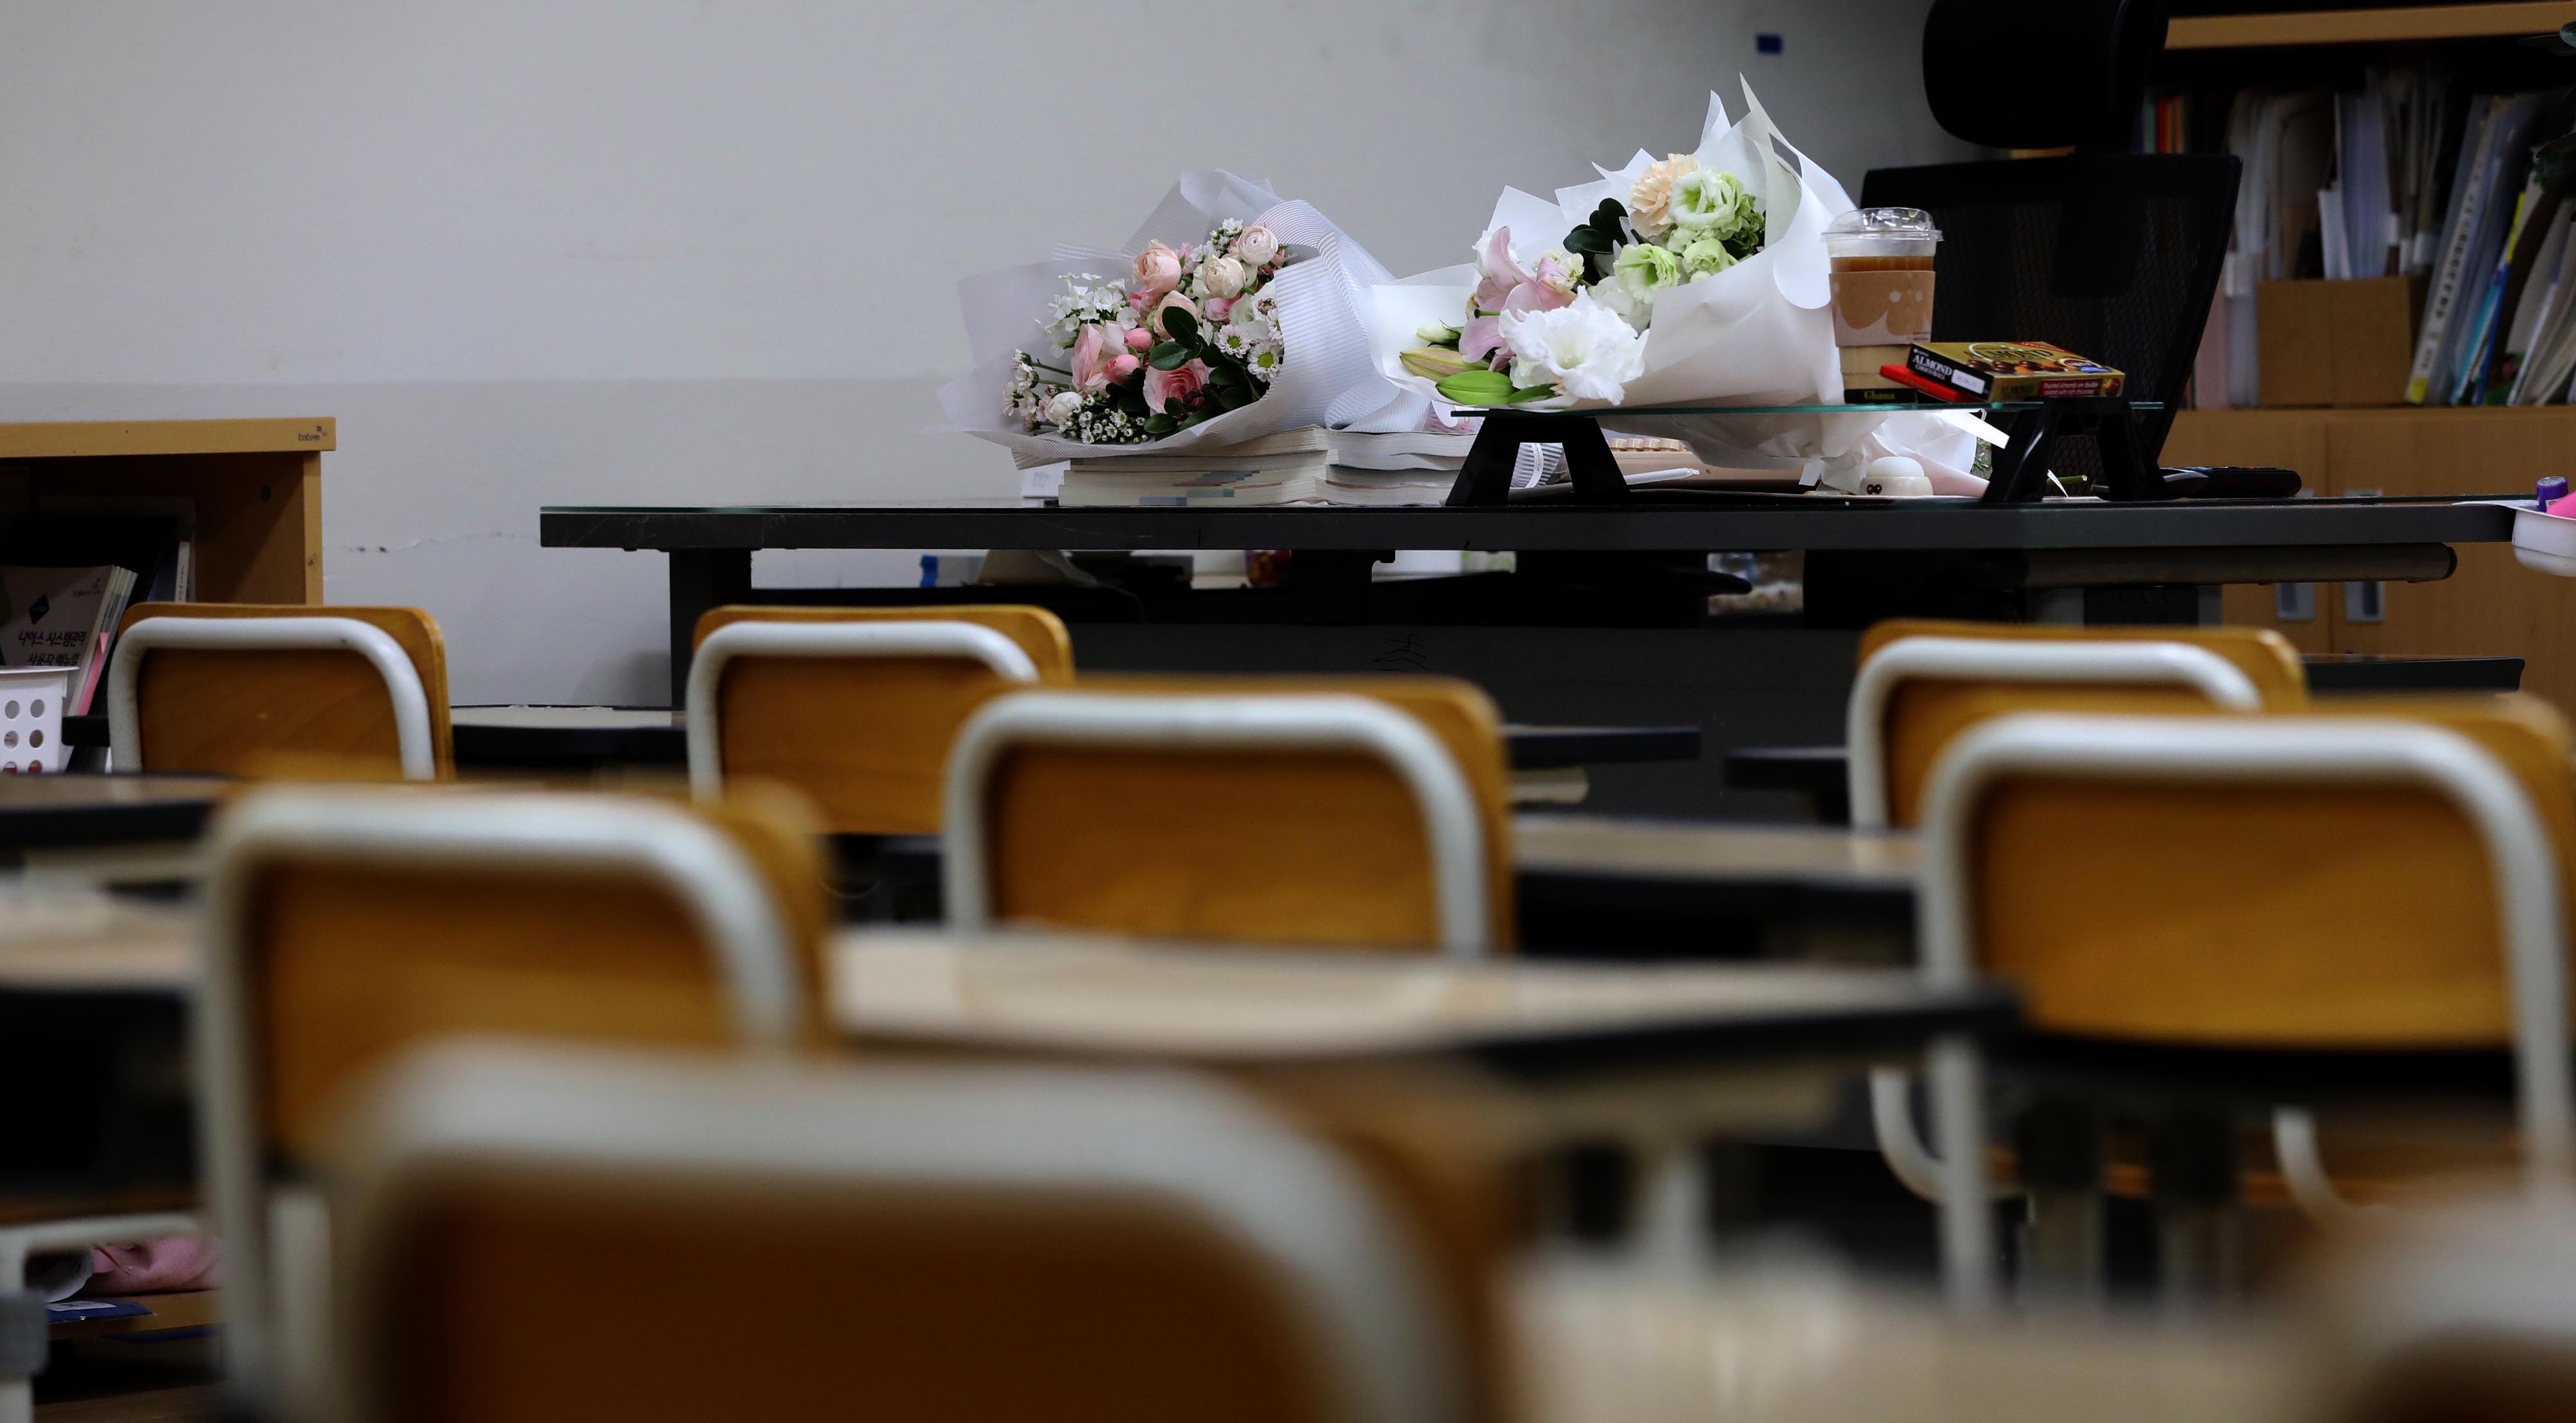 서울 서이초등학교에서 숨진 채 발견된 교사의 49재일인 4일 교사의 교실에 화환과 추모의 추모 꽃다발이 놓여 있다 . 홍윤기 기자